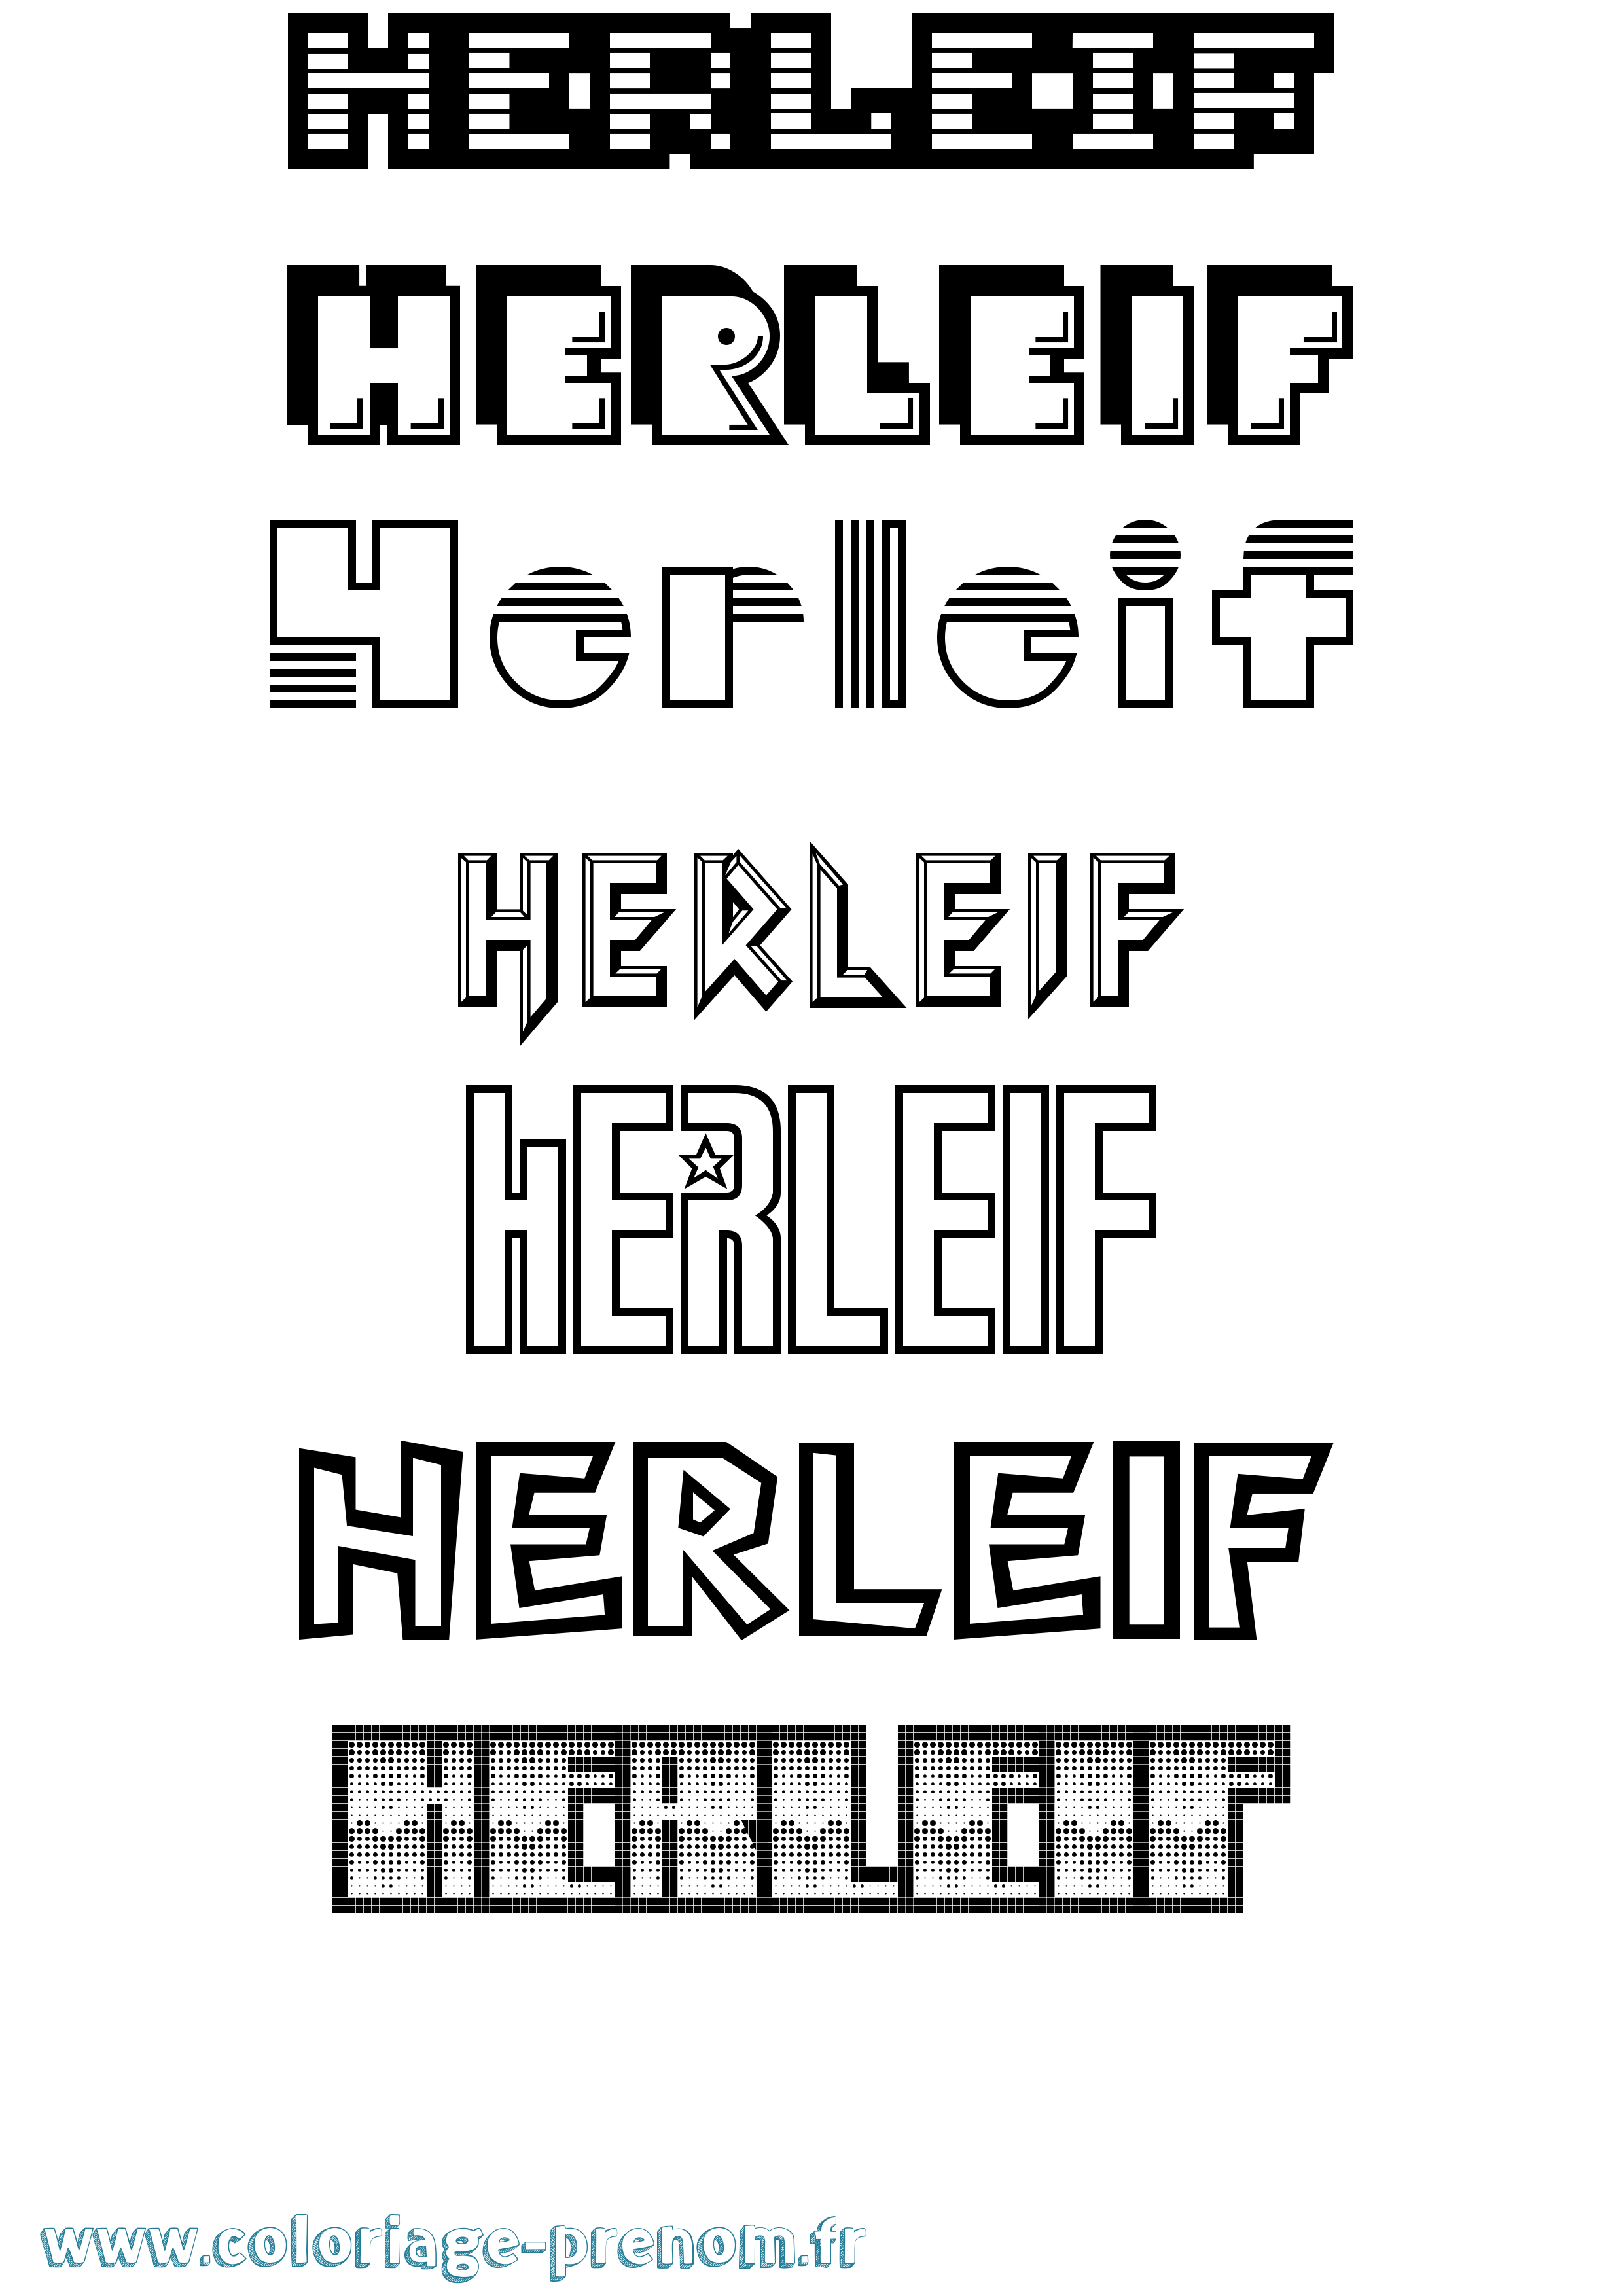 Coloriage prénom Herleif Jeux Vidéos